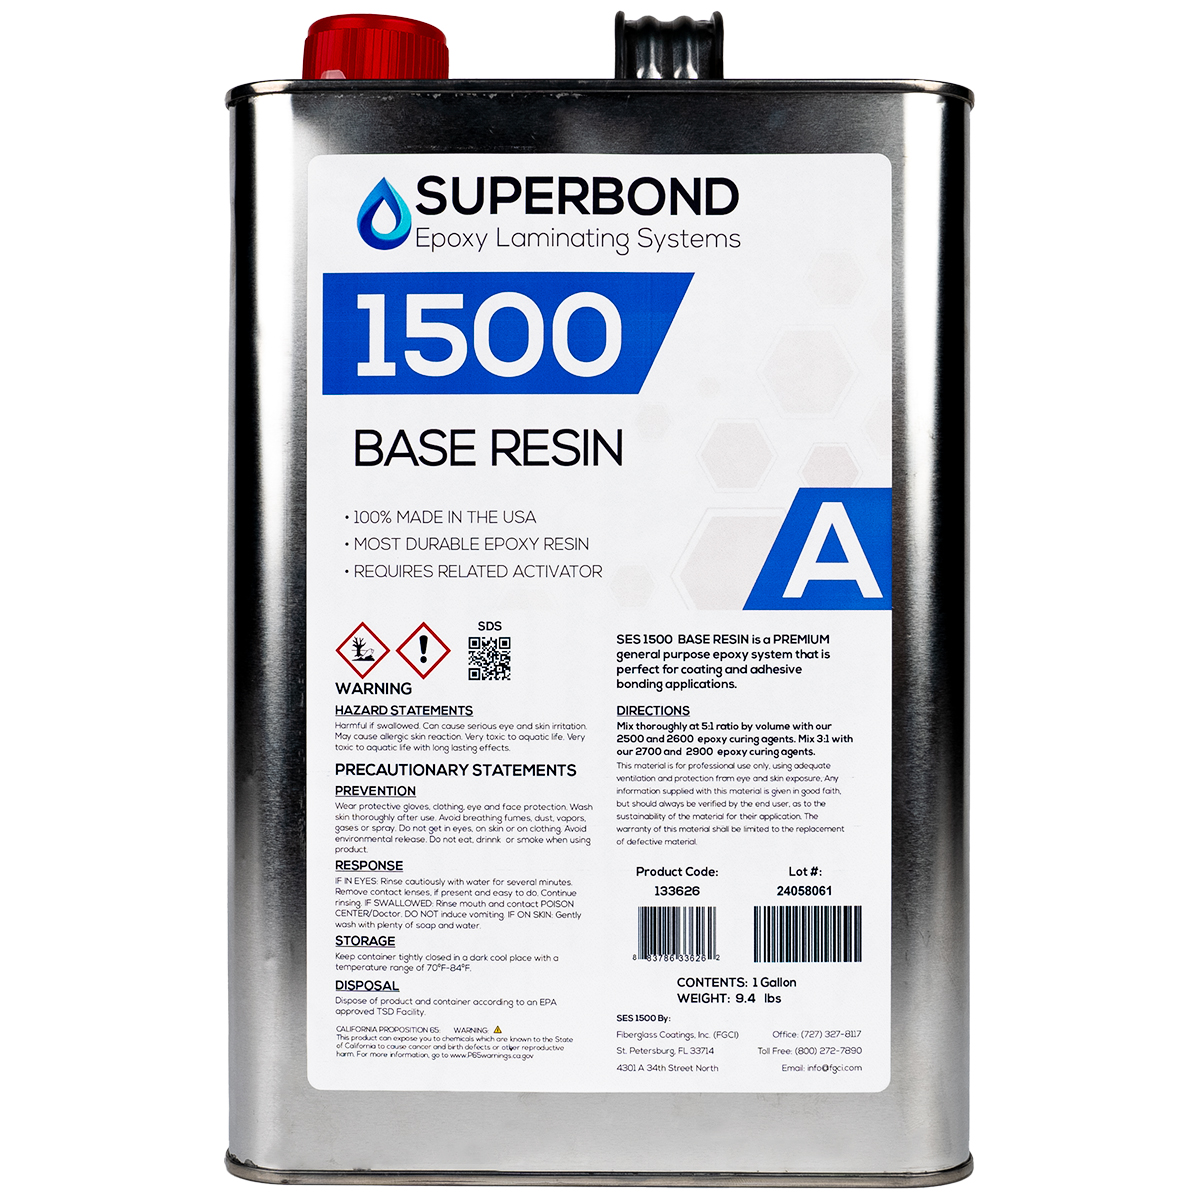 Superbond Epoxy Laminating System - 1500 Base Resin